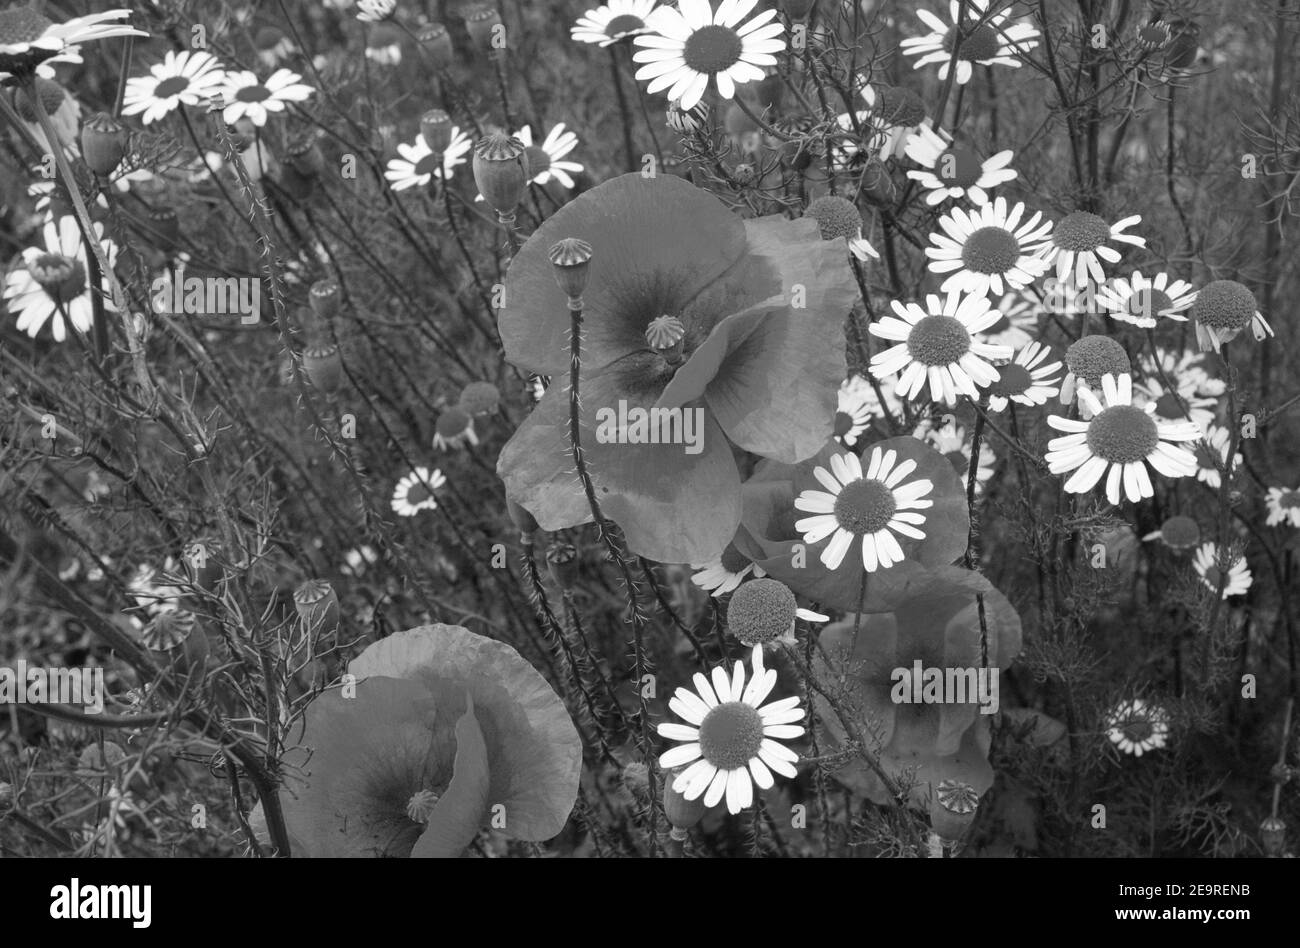 Fleurs sauvages en monochrome Banque D'Images